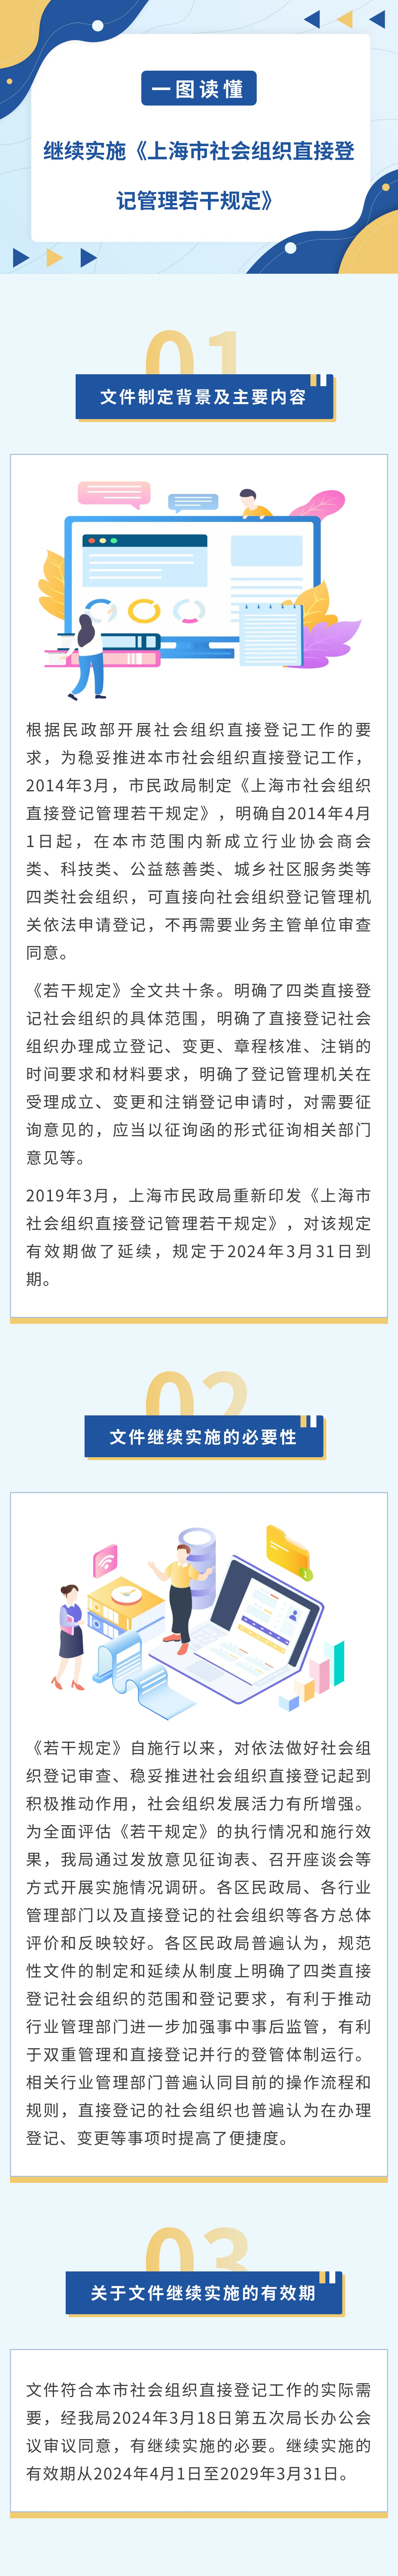 一图读懂《关于继续实施〈上海市社会组织直接登记管理若干规定〉》.jpg